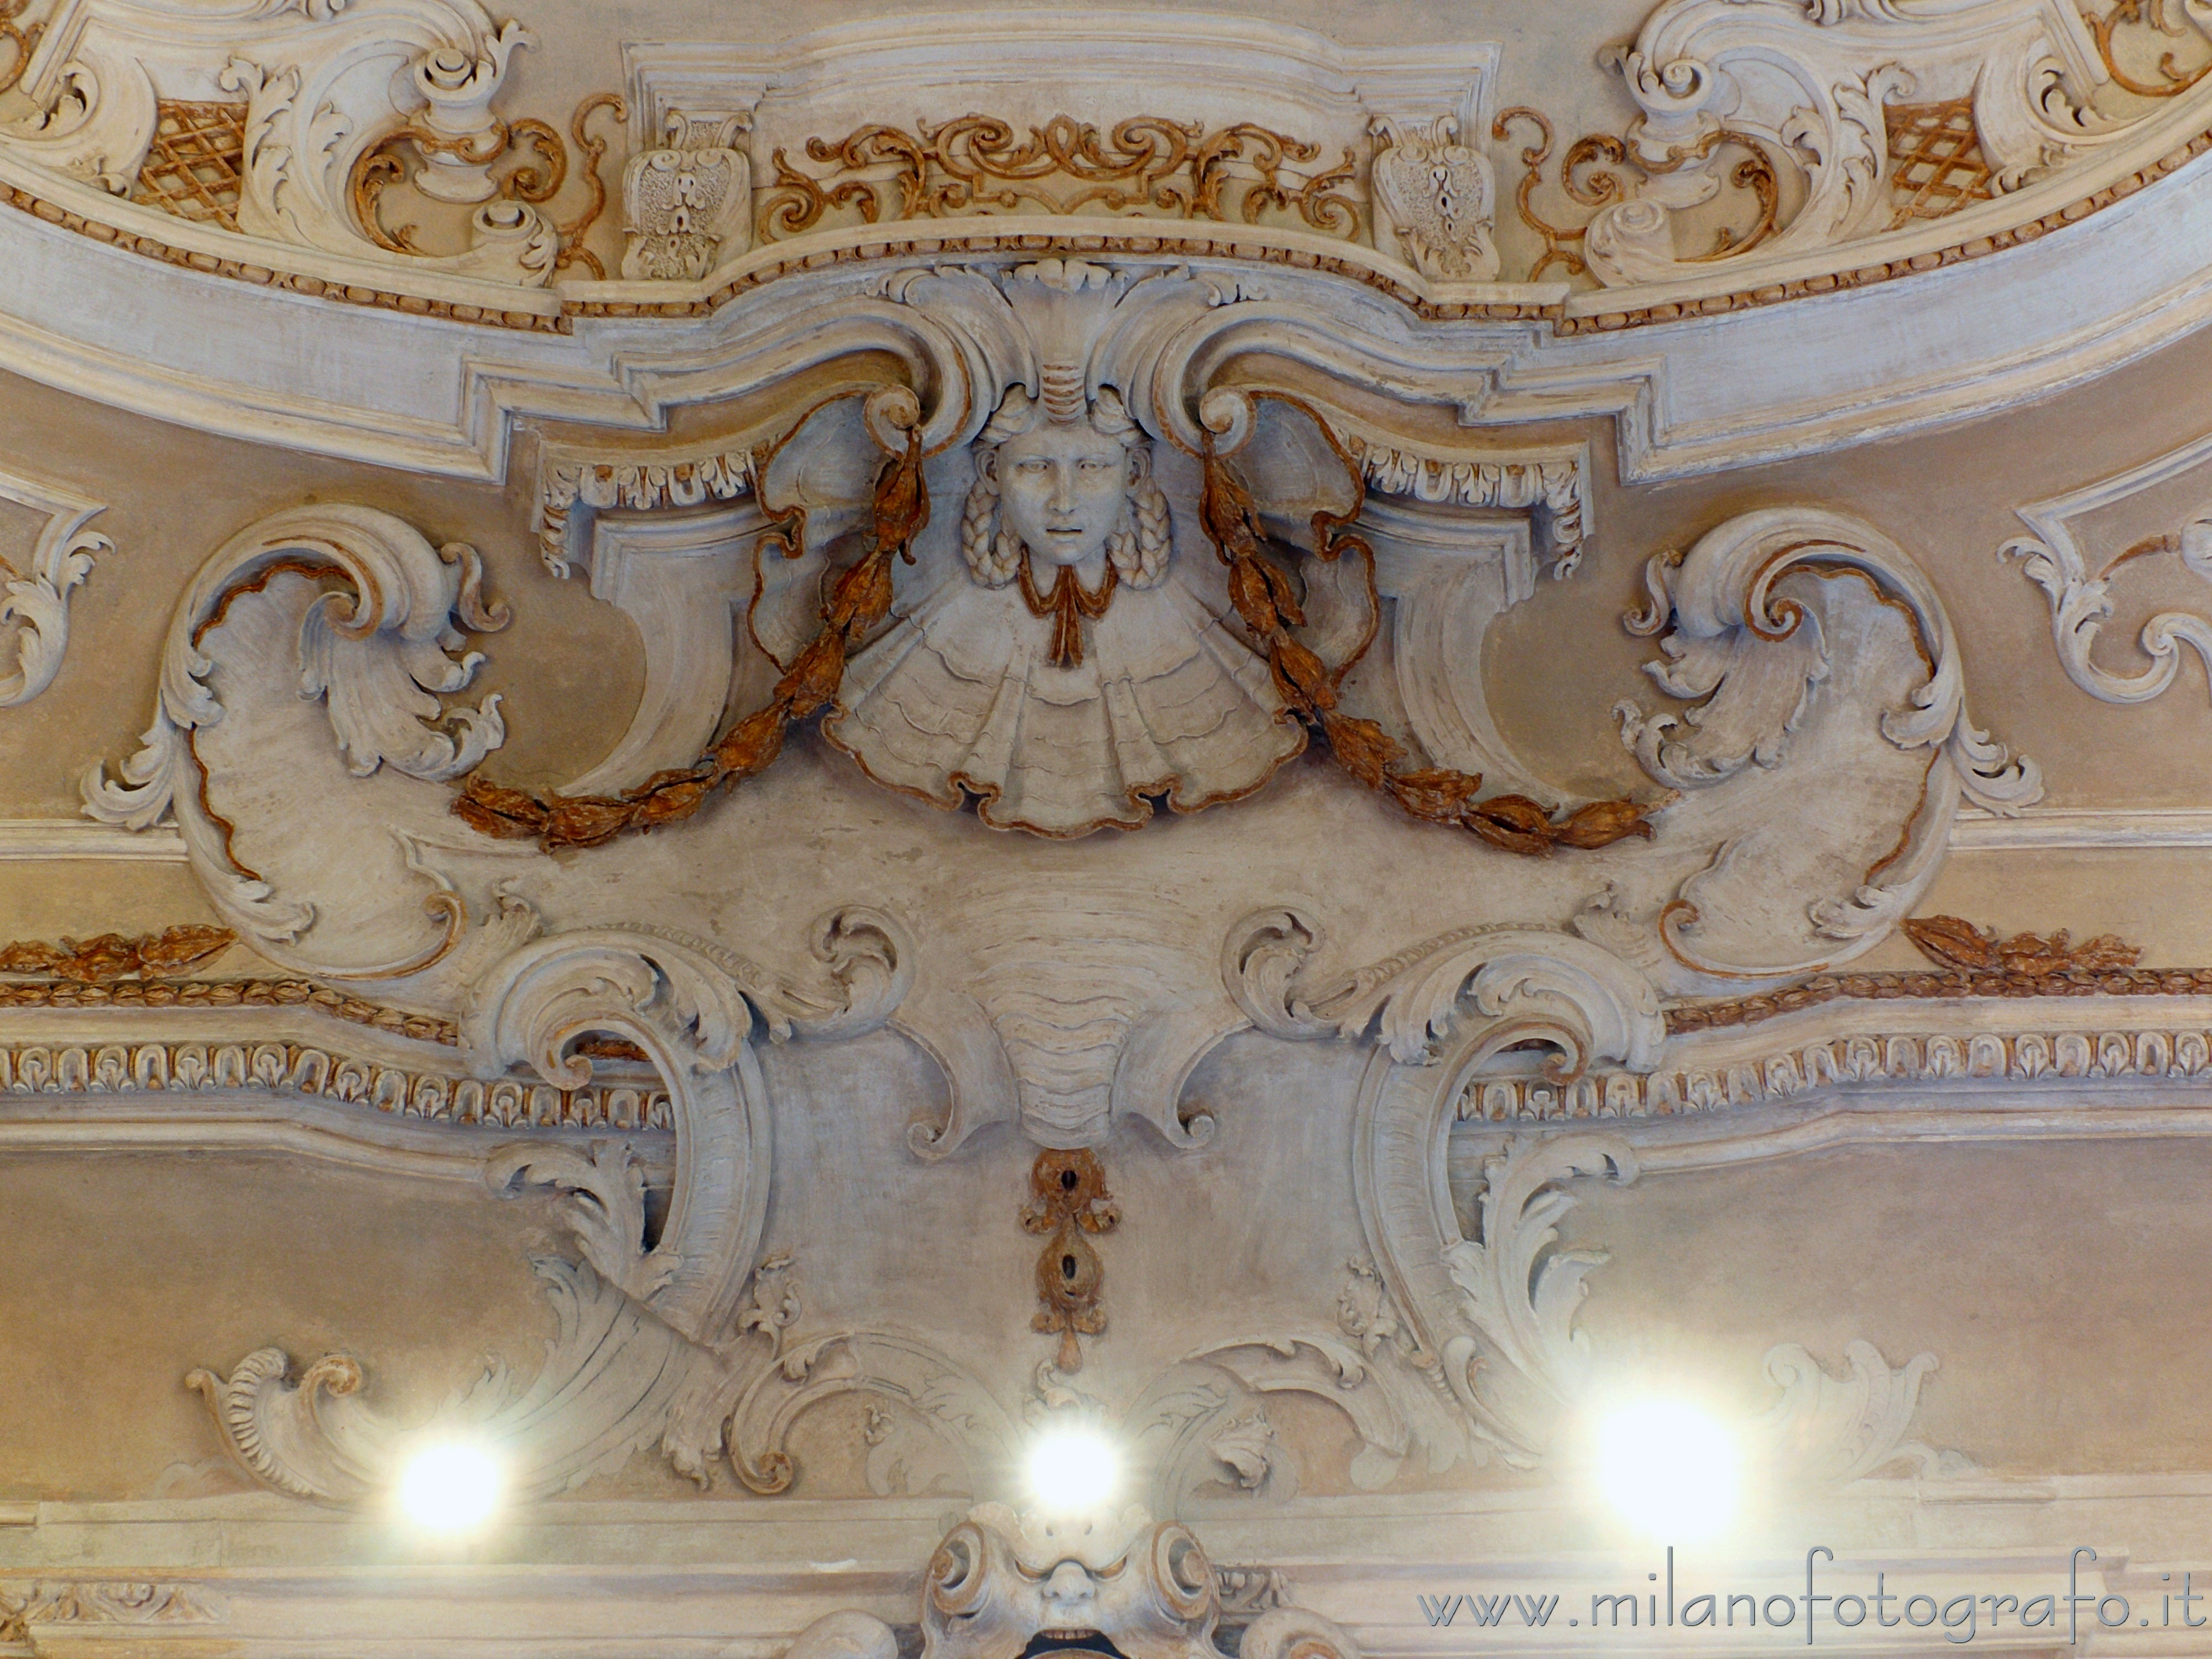 Arcore (Monza e Brianza, Italy): Gilded stucco decorations in the oval hall of Villa Borromeo d'Adda - Arcore (Monza e Brianza, Italy)